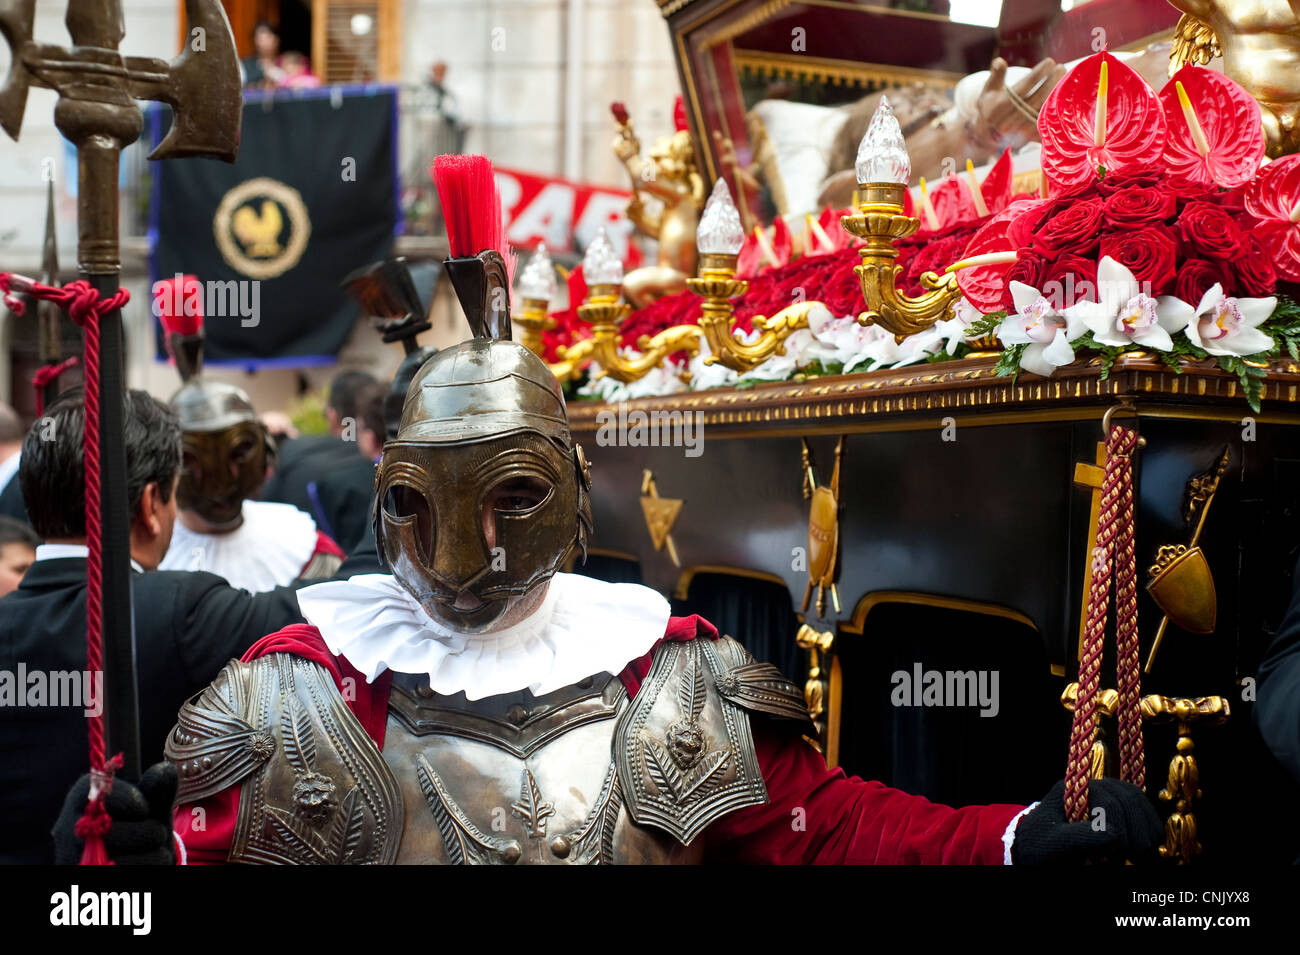 Palerme, Sicile, Italie - homme habillé en soldat romain pendant les célébrations de Pâques Vendredi Saint Banque D'Images